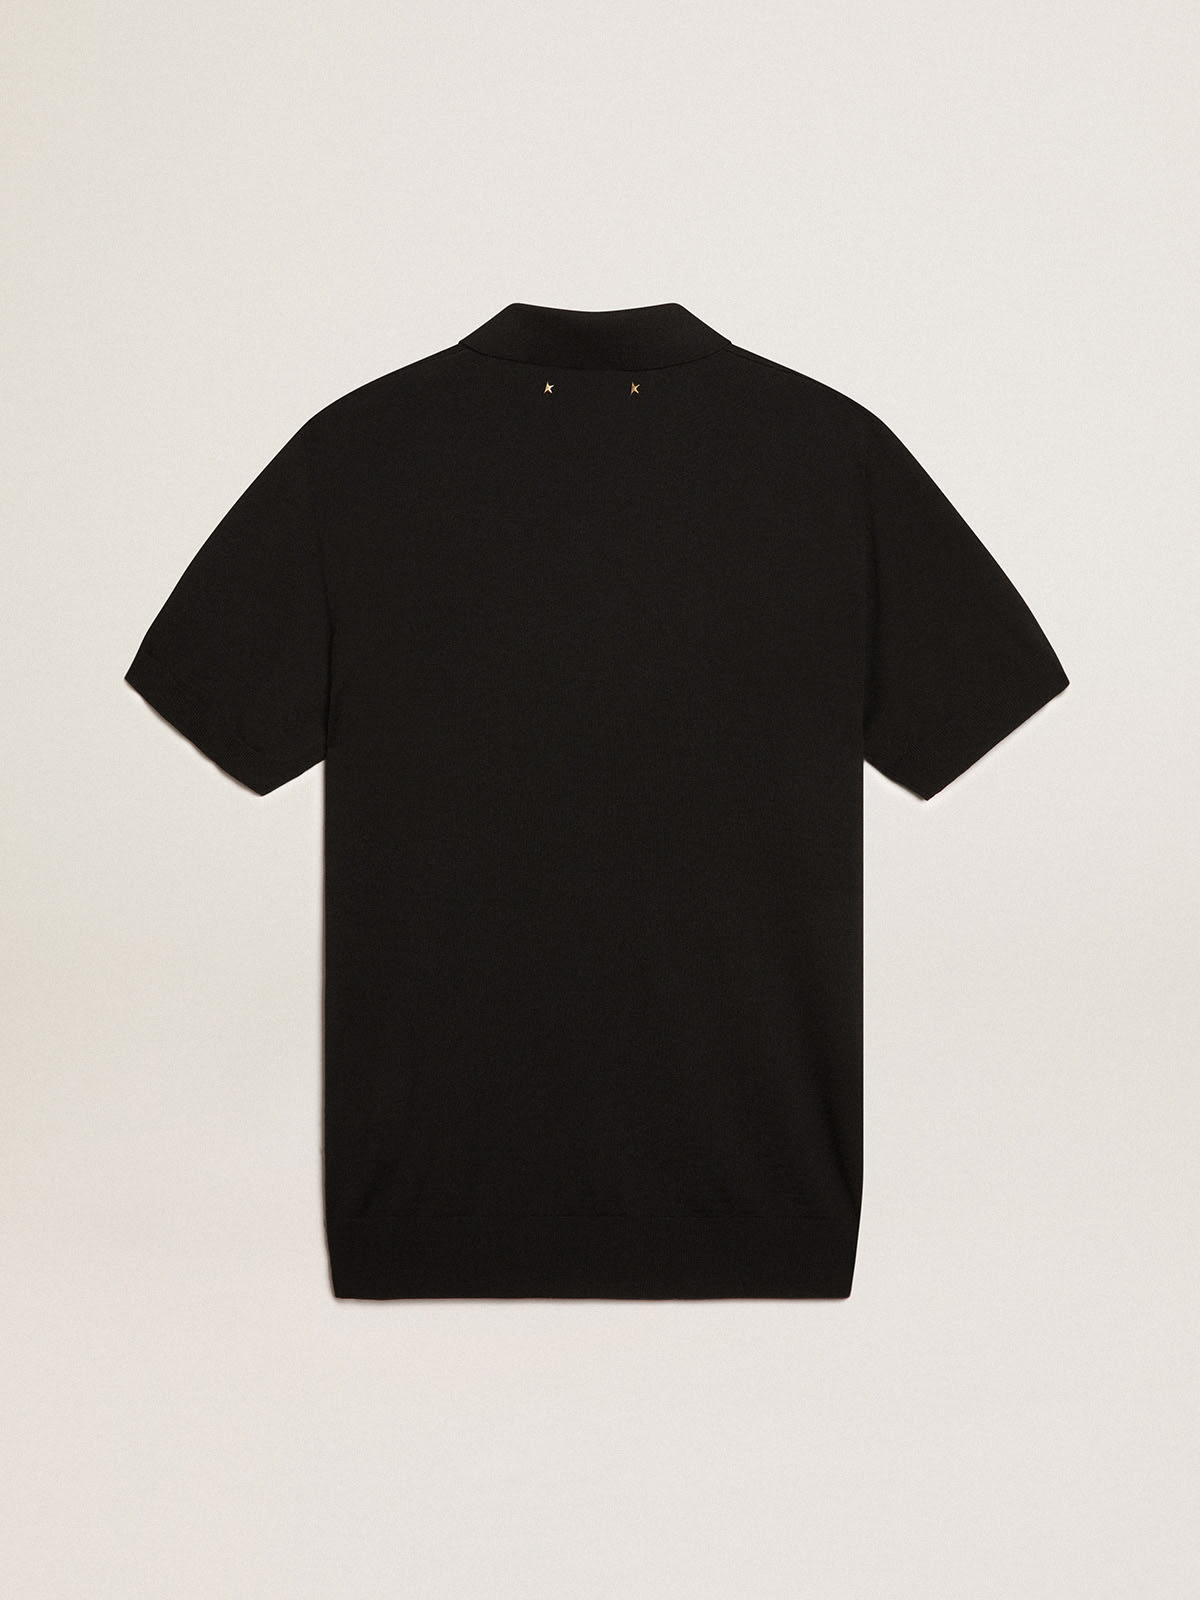 Golden Goose - Men’s short-sleeved polo shirt in black merino wool in 